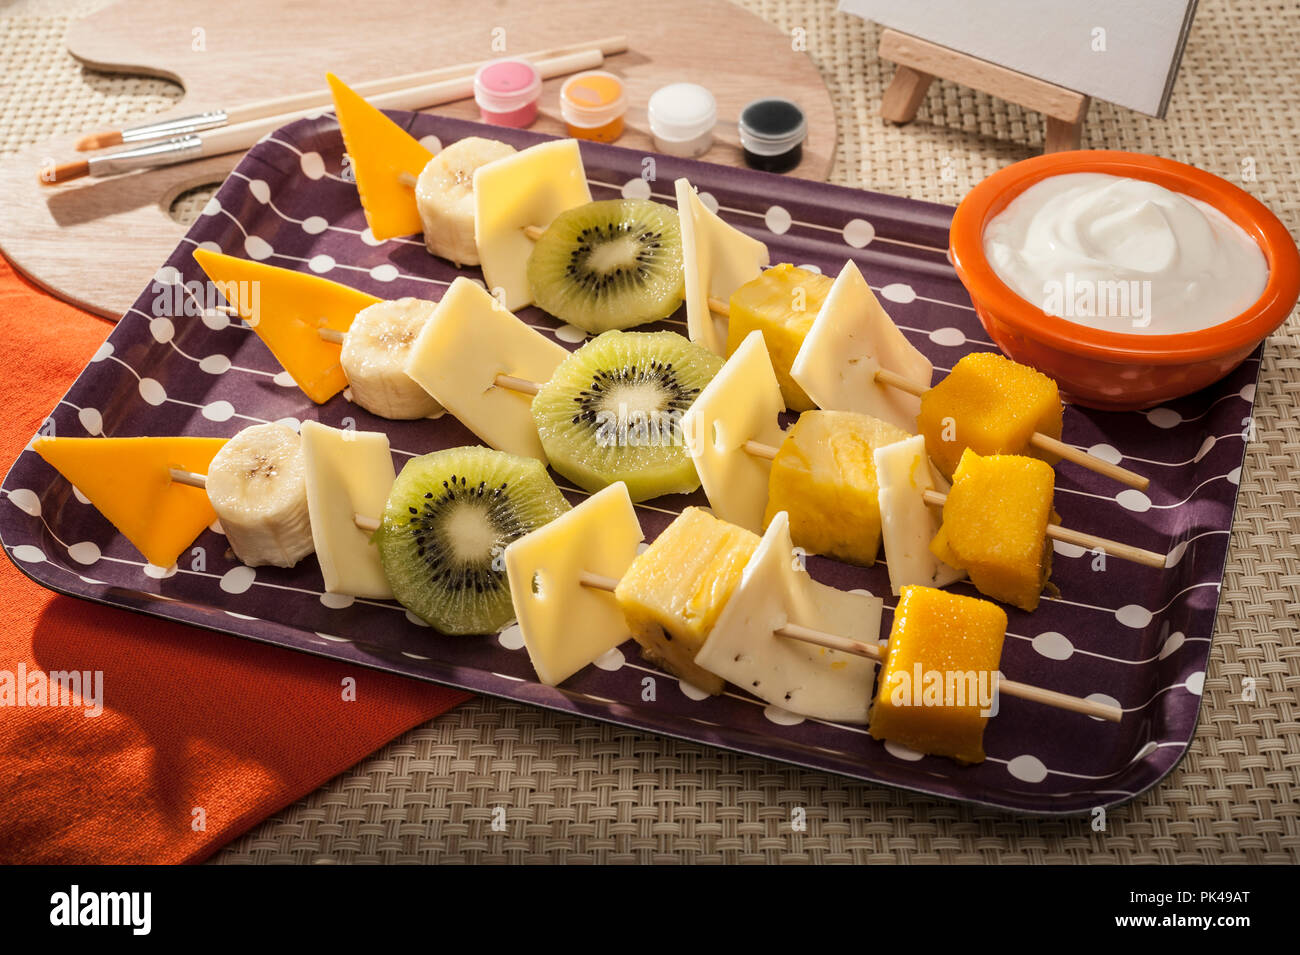 La frutta tropicale e spiedini di formaggio Foto Stock